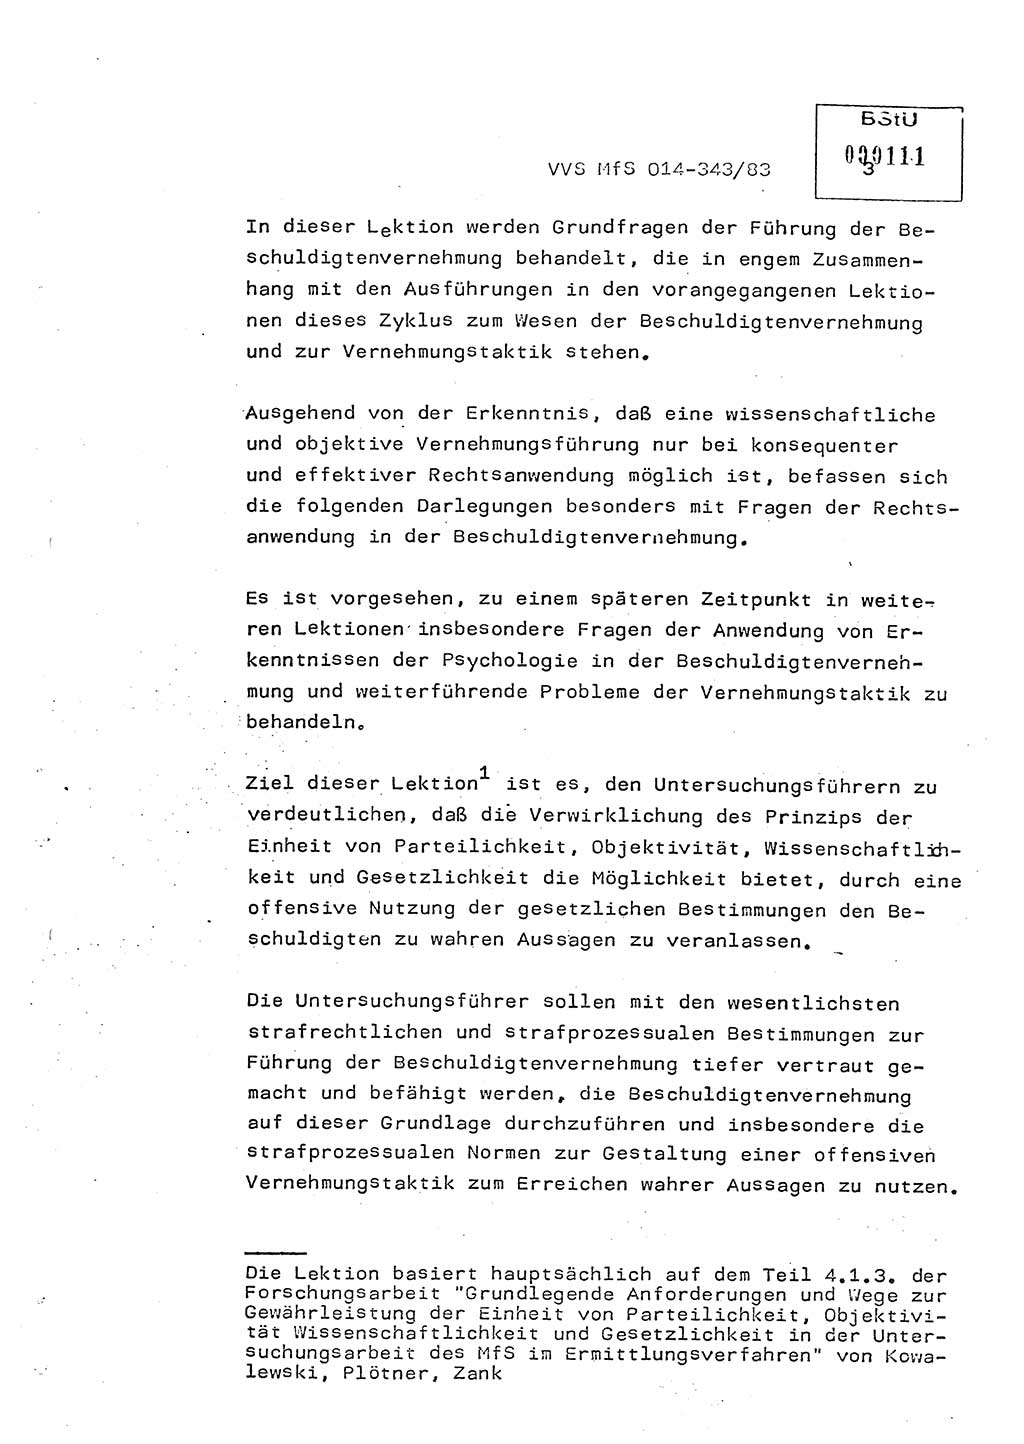 Lektion Ministerium für Staatssicherheit (MfS) [Deutsche Demokratische Republik (DDR)], Hauptabteilung (HA) Ⅸ, Vertrauliche Verschlußsache (VVS) o014-343/83, Berlin 1983, Seite 3 (Lekt. MfS DDR HA Ⅸ VVS o014-343/83 1983, S. 3)